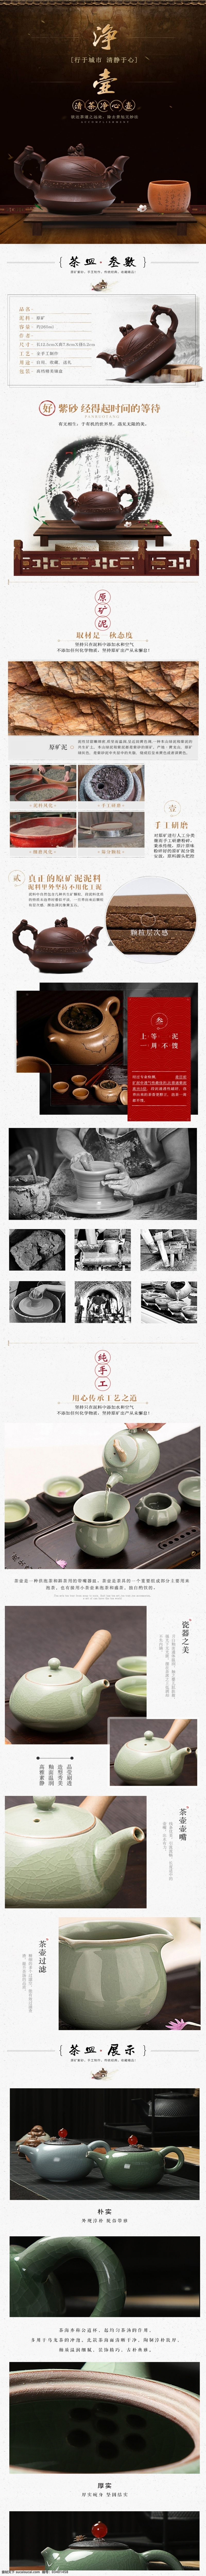 电商 淘宝 茶壶 茶叶 详情 页 模板 简约 中国 风